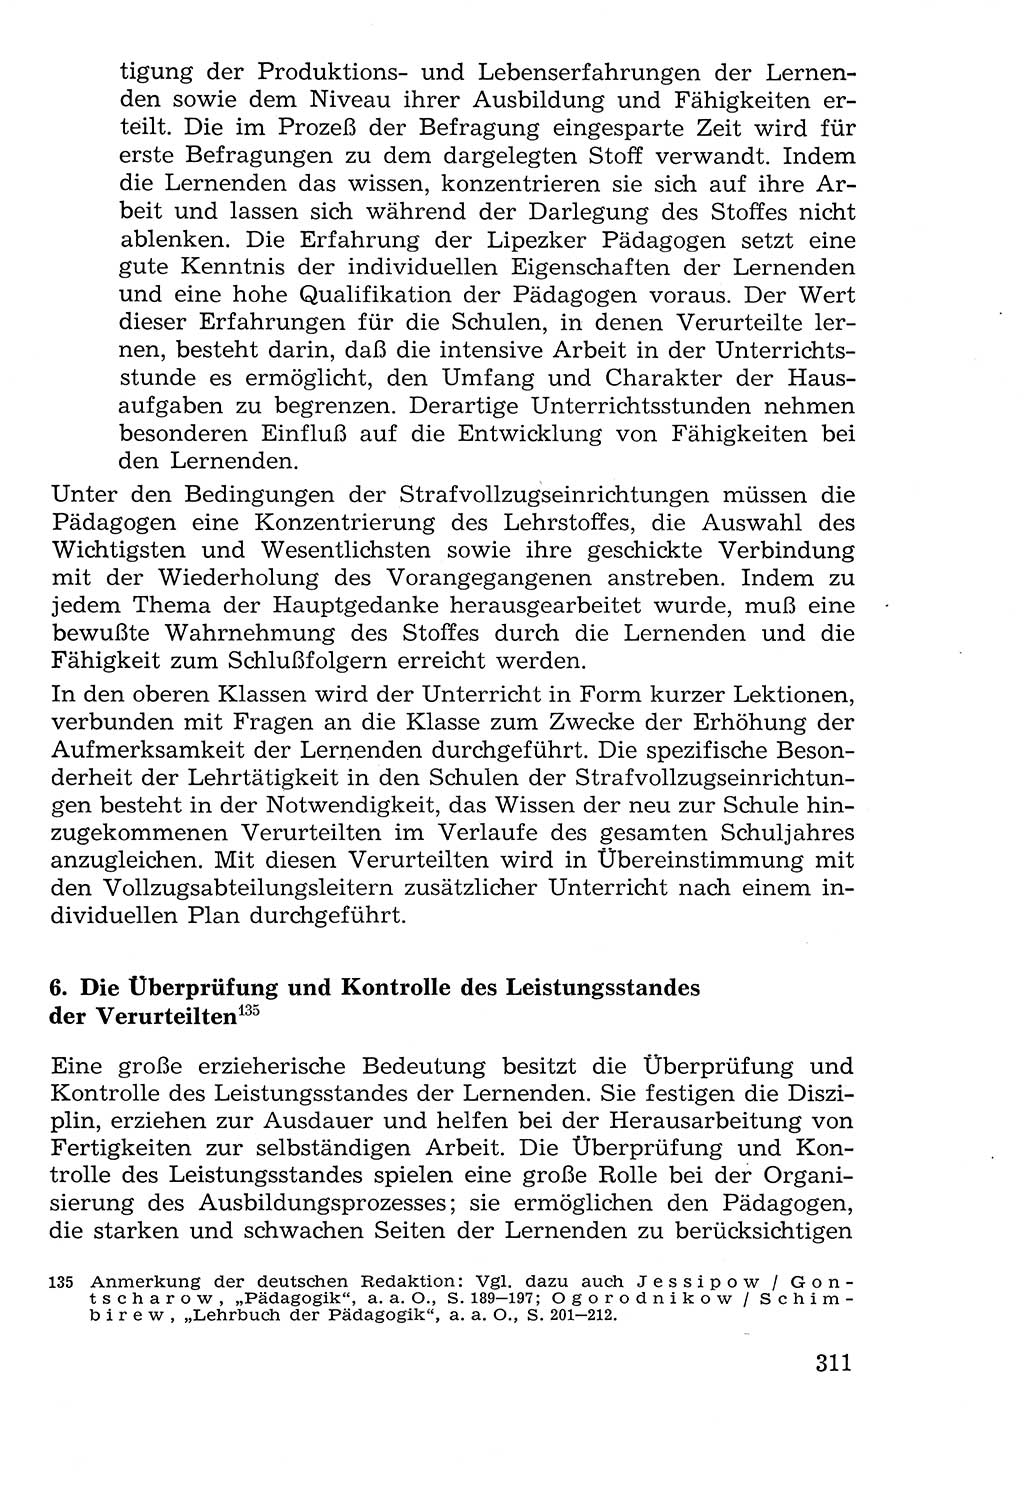 Lehrbuch der Strafvollzugspädagogik [Deutsche Demokratische Republik (DDR)] 1969, Seite 311 (Lb. SV-Pd. DDR 1969, S. 311)